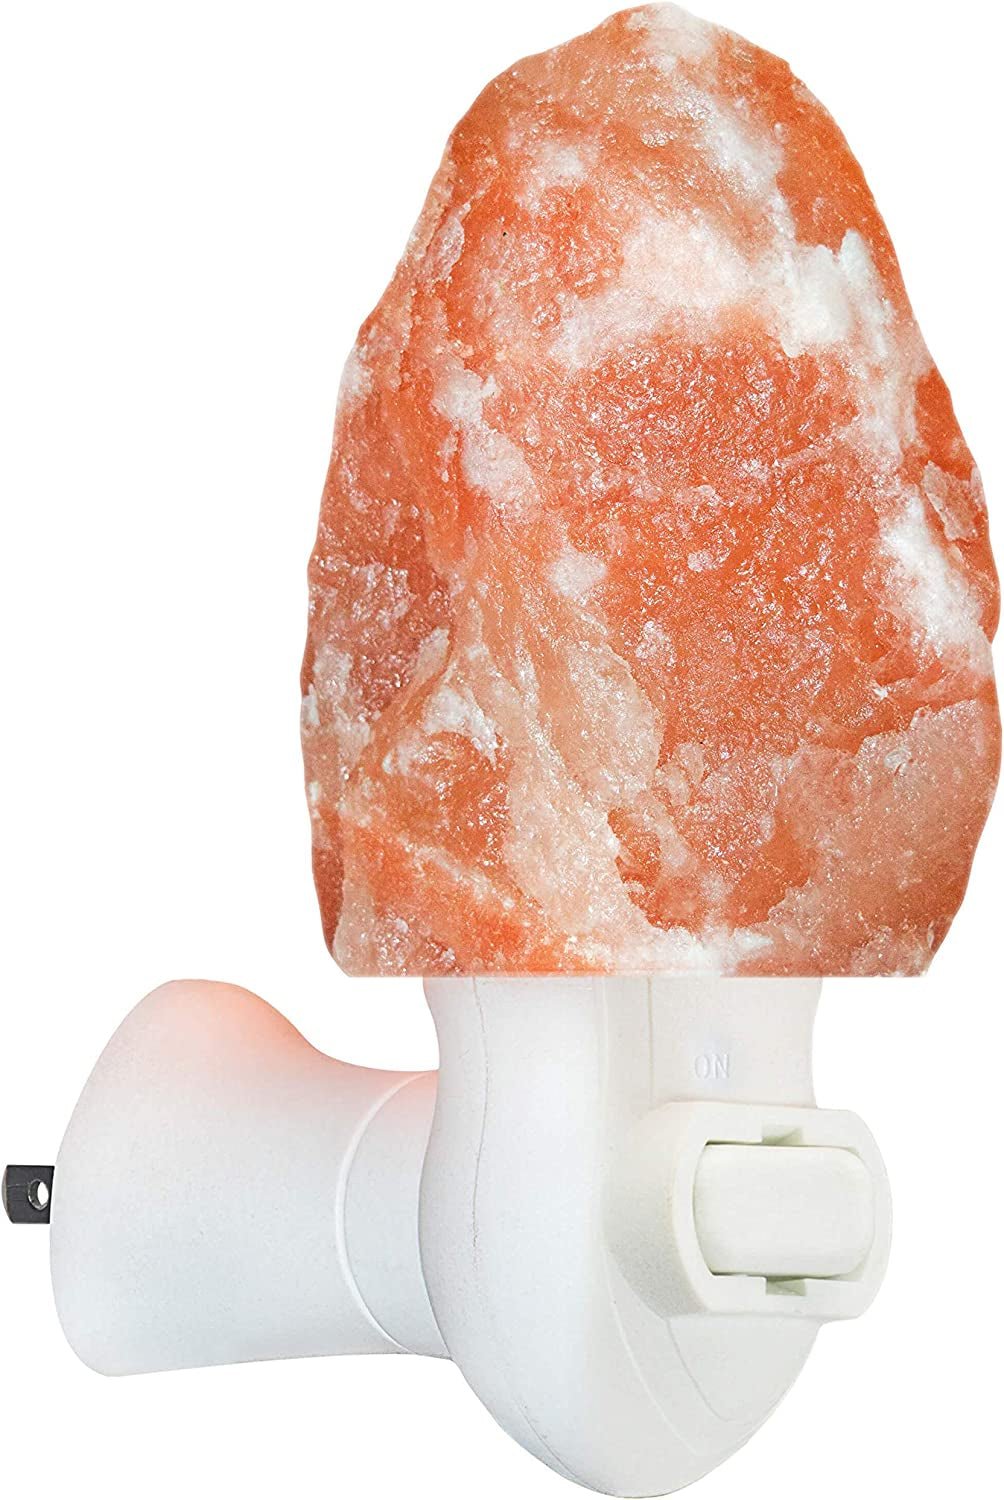 Premium Himalayan Rock Salt Lamp - Large Pink Salt Lamp for Natural Home Decor - Abbycart